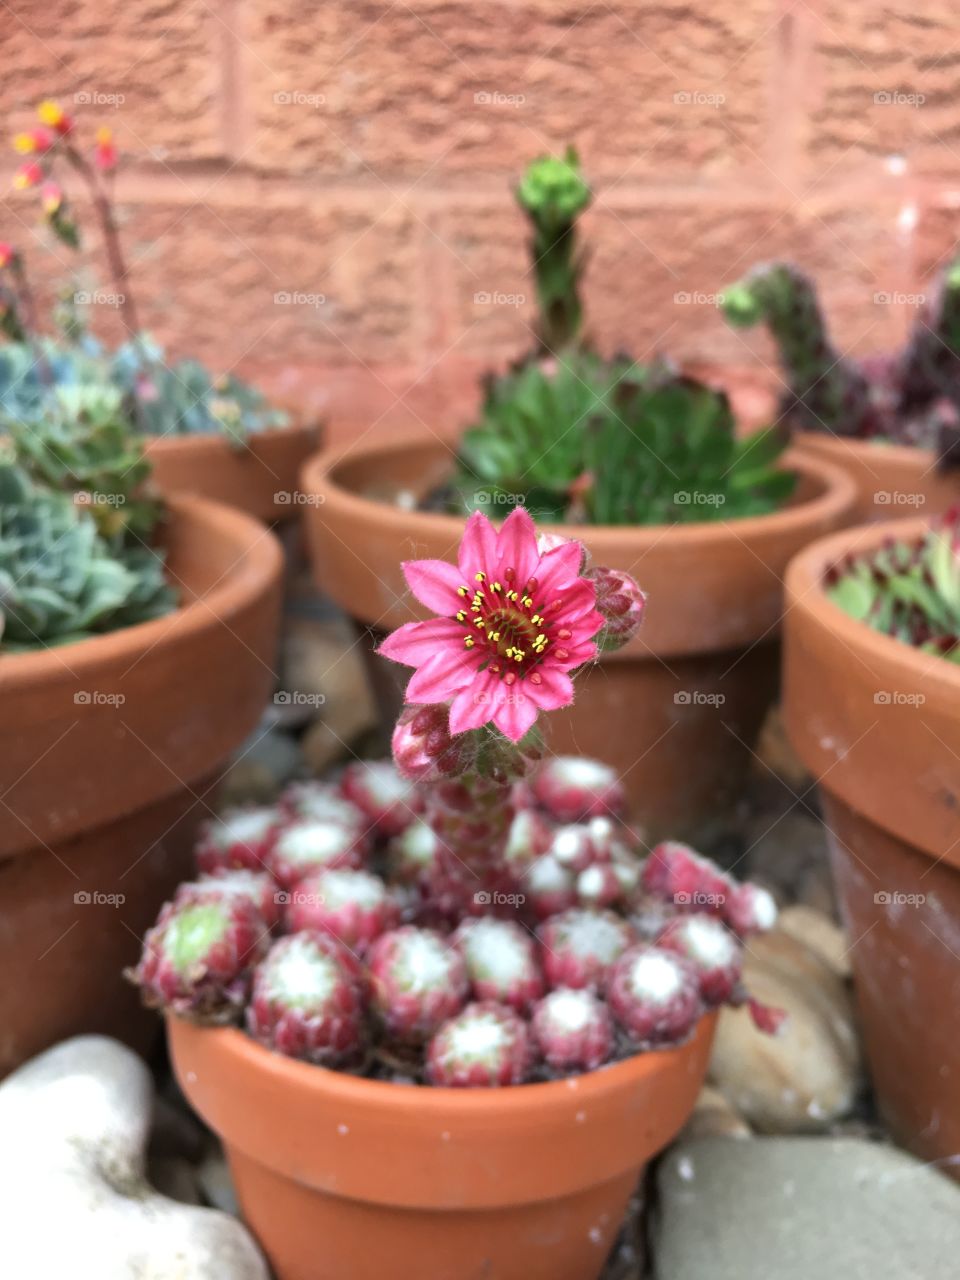 Pink alpine flower